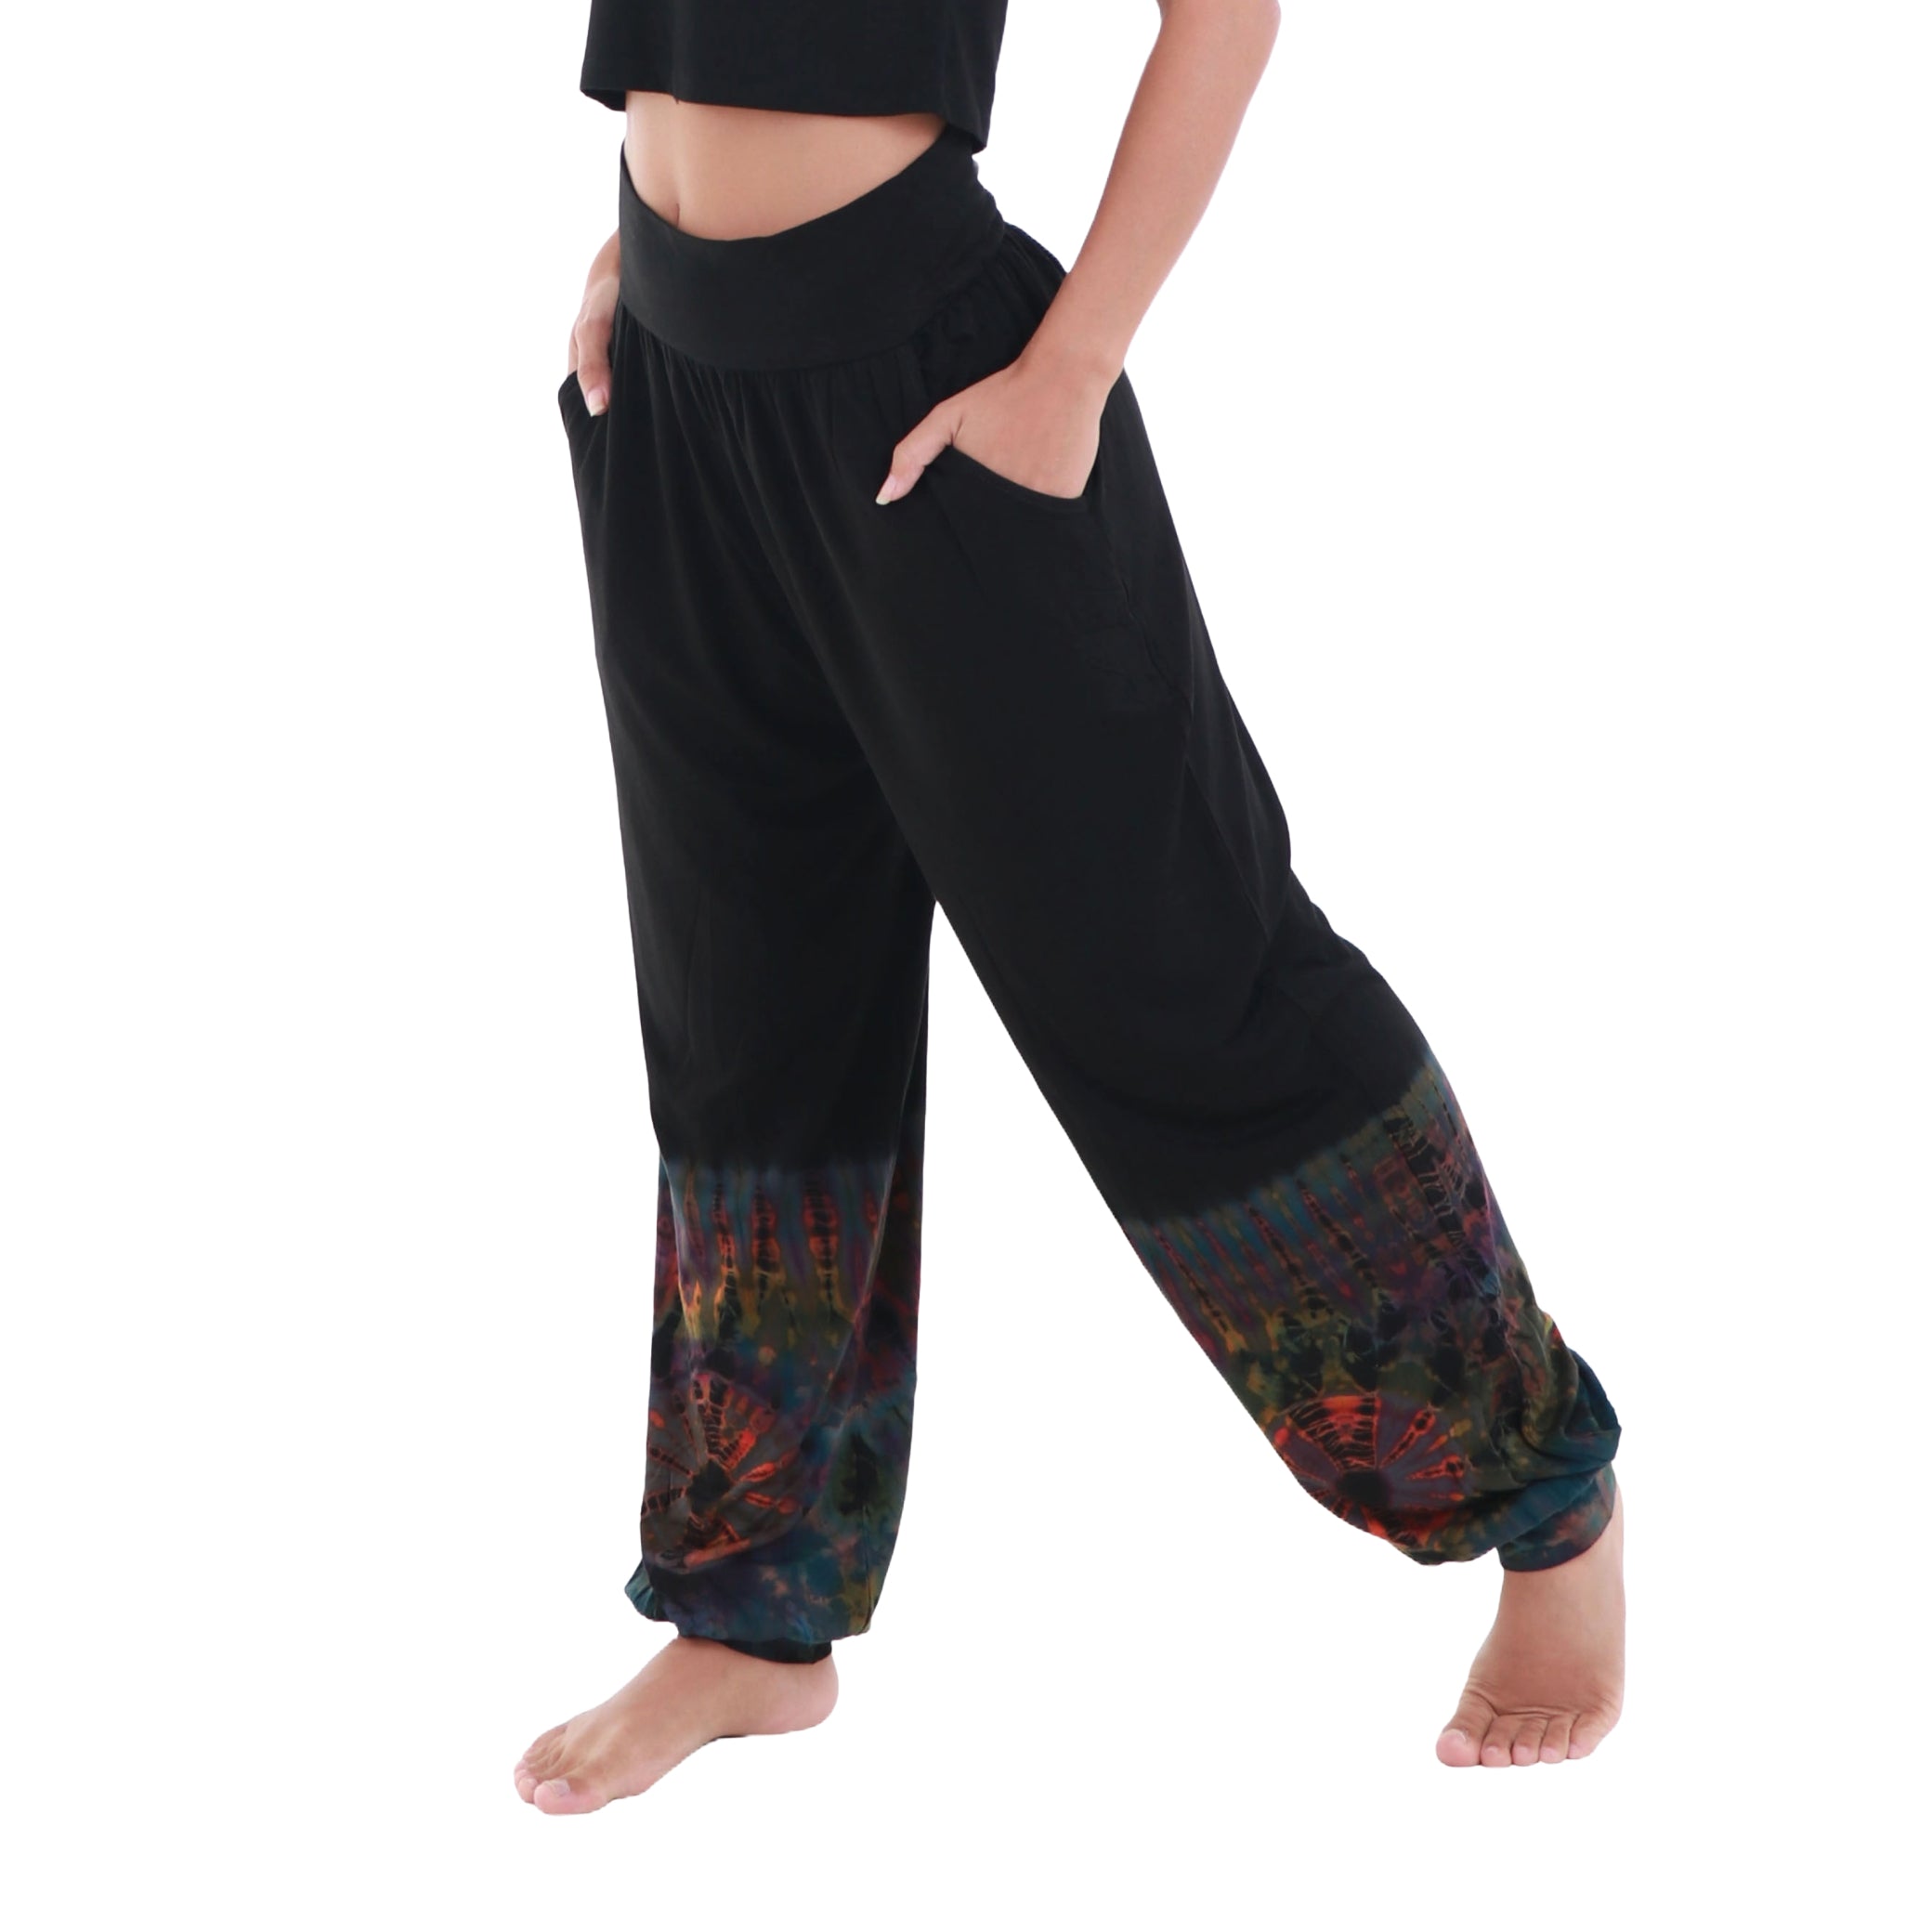 Women's Yoga Dress Pants Stretchy Tie Dye print Slacks Business